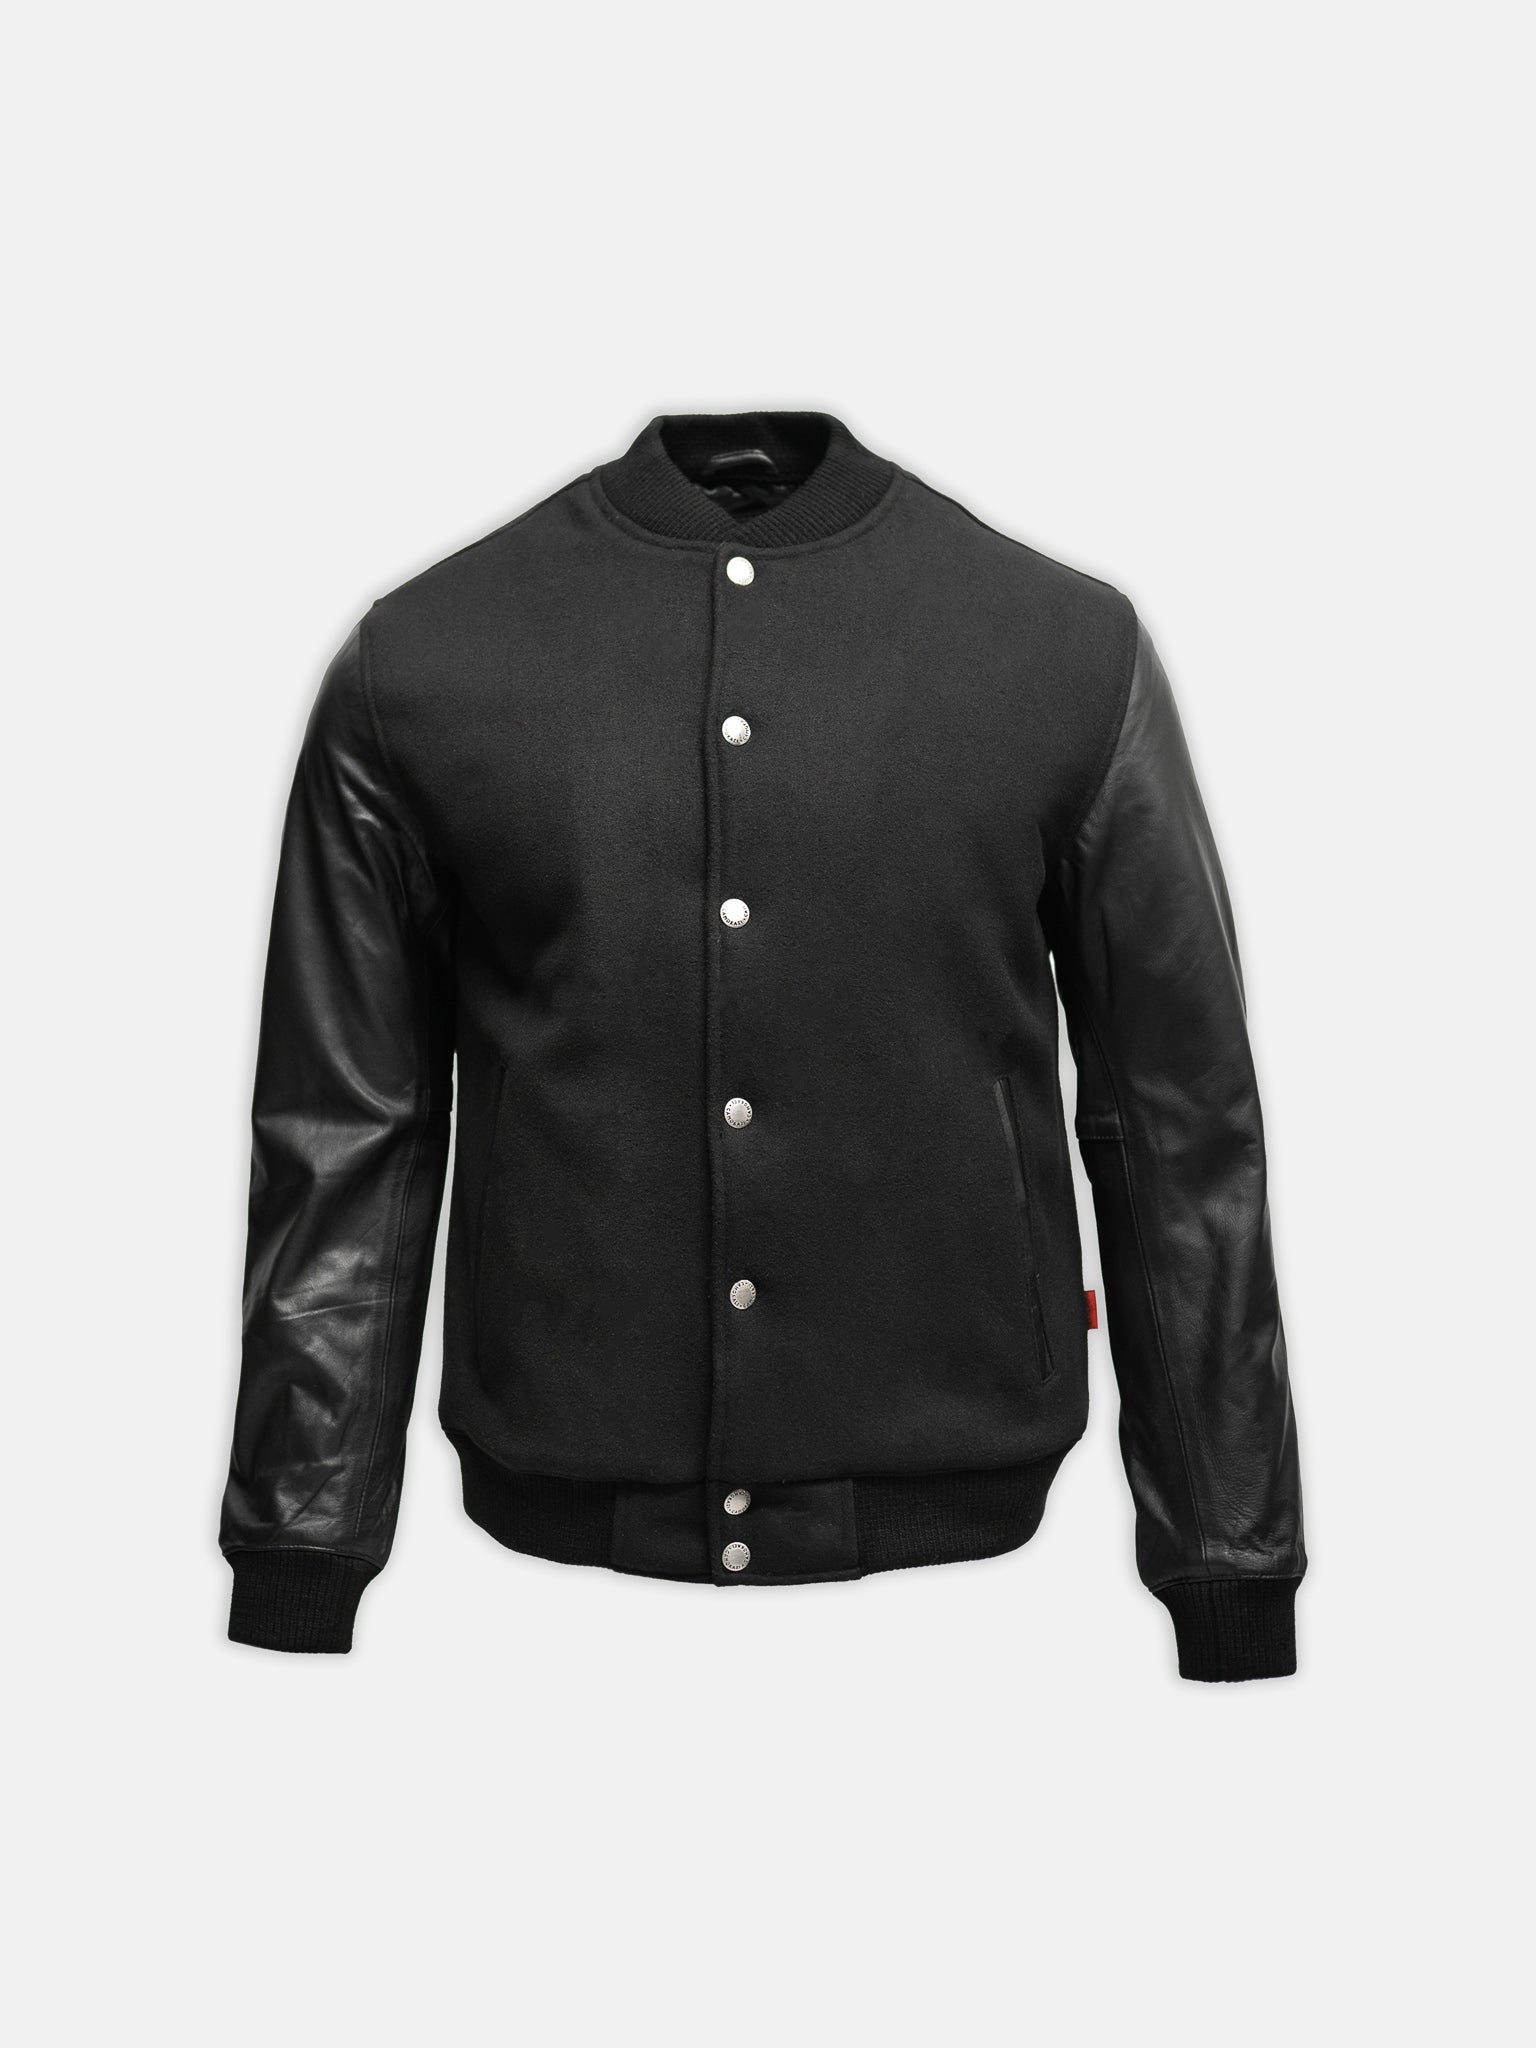 black varsity jacket leather